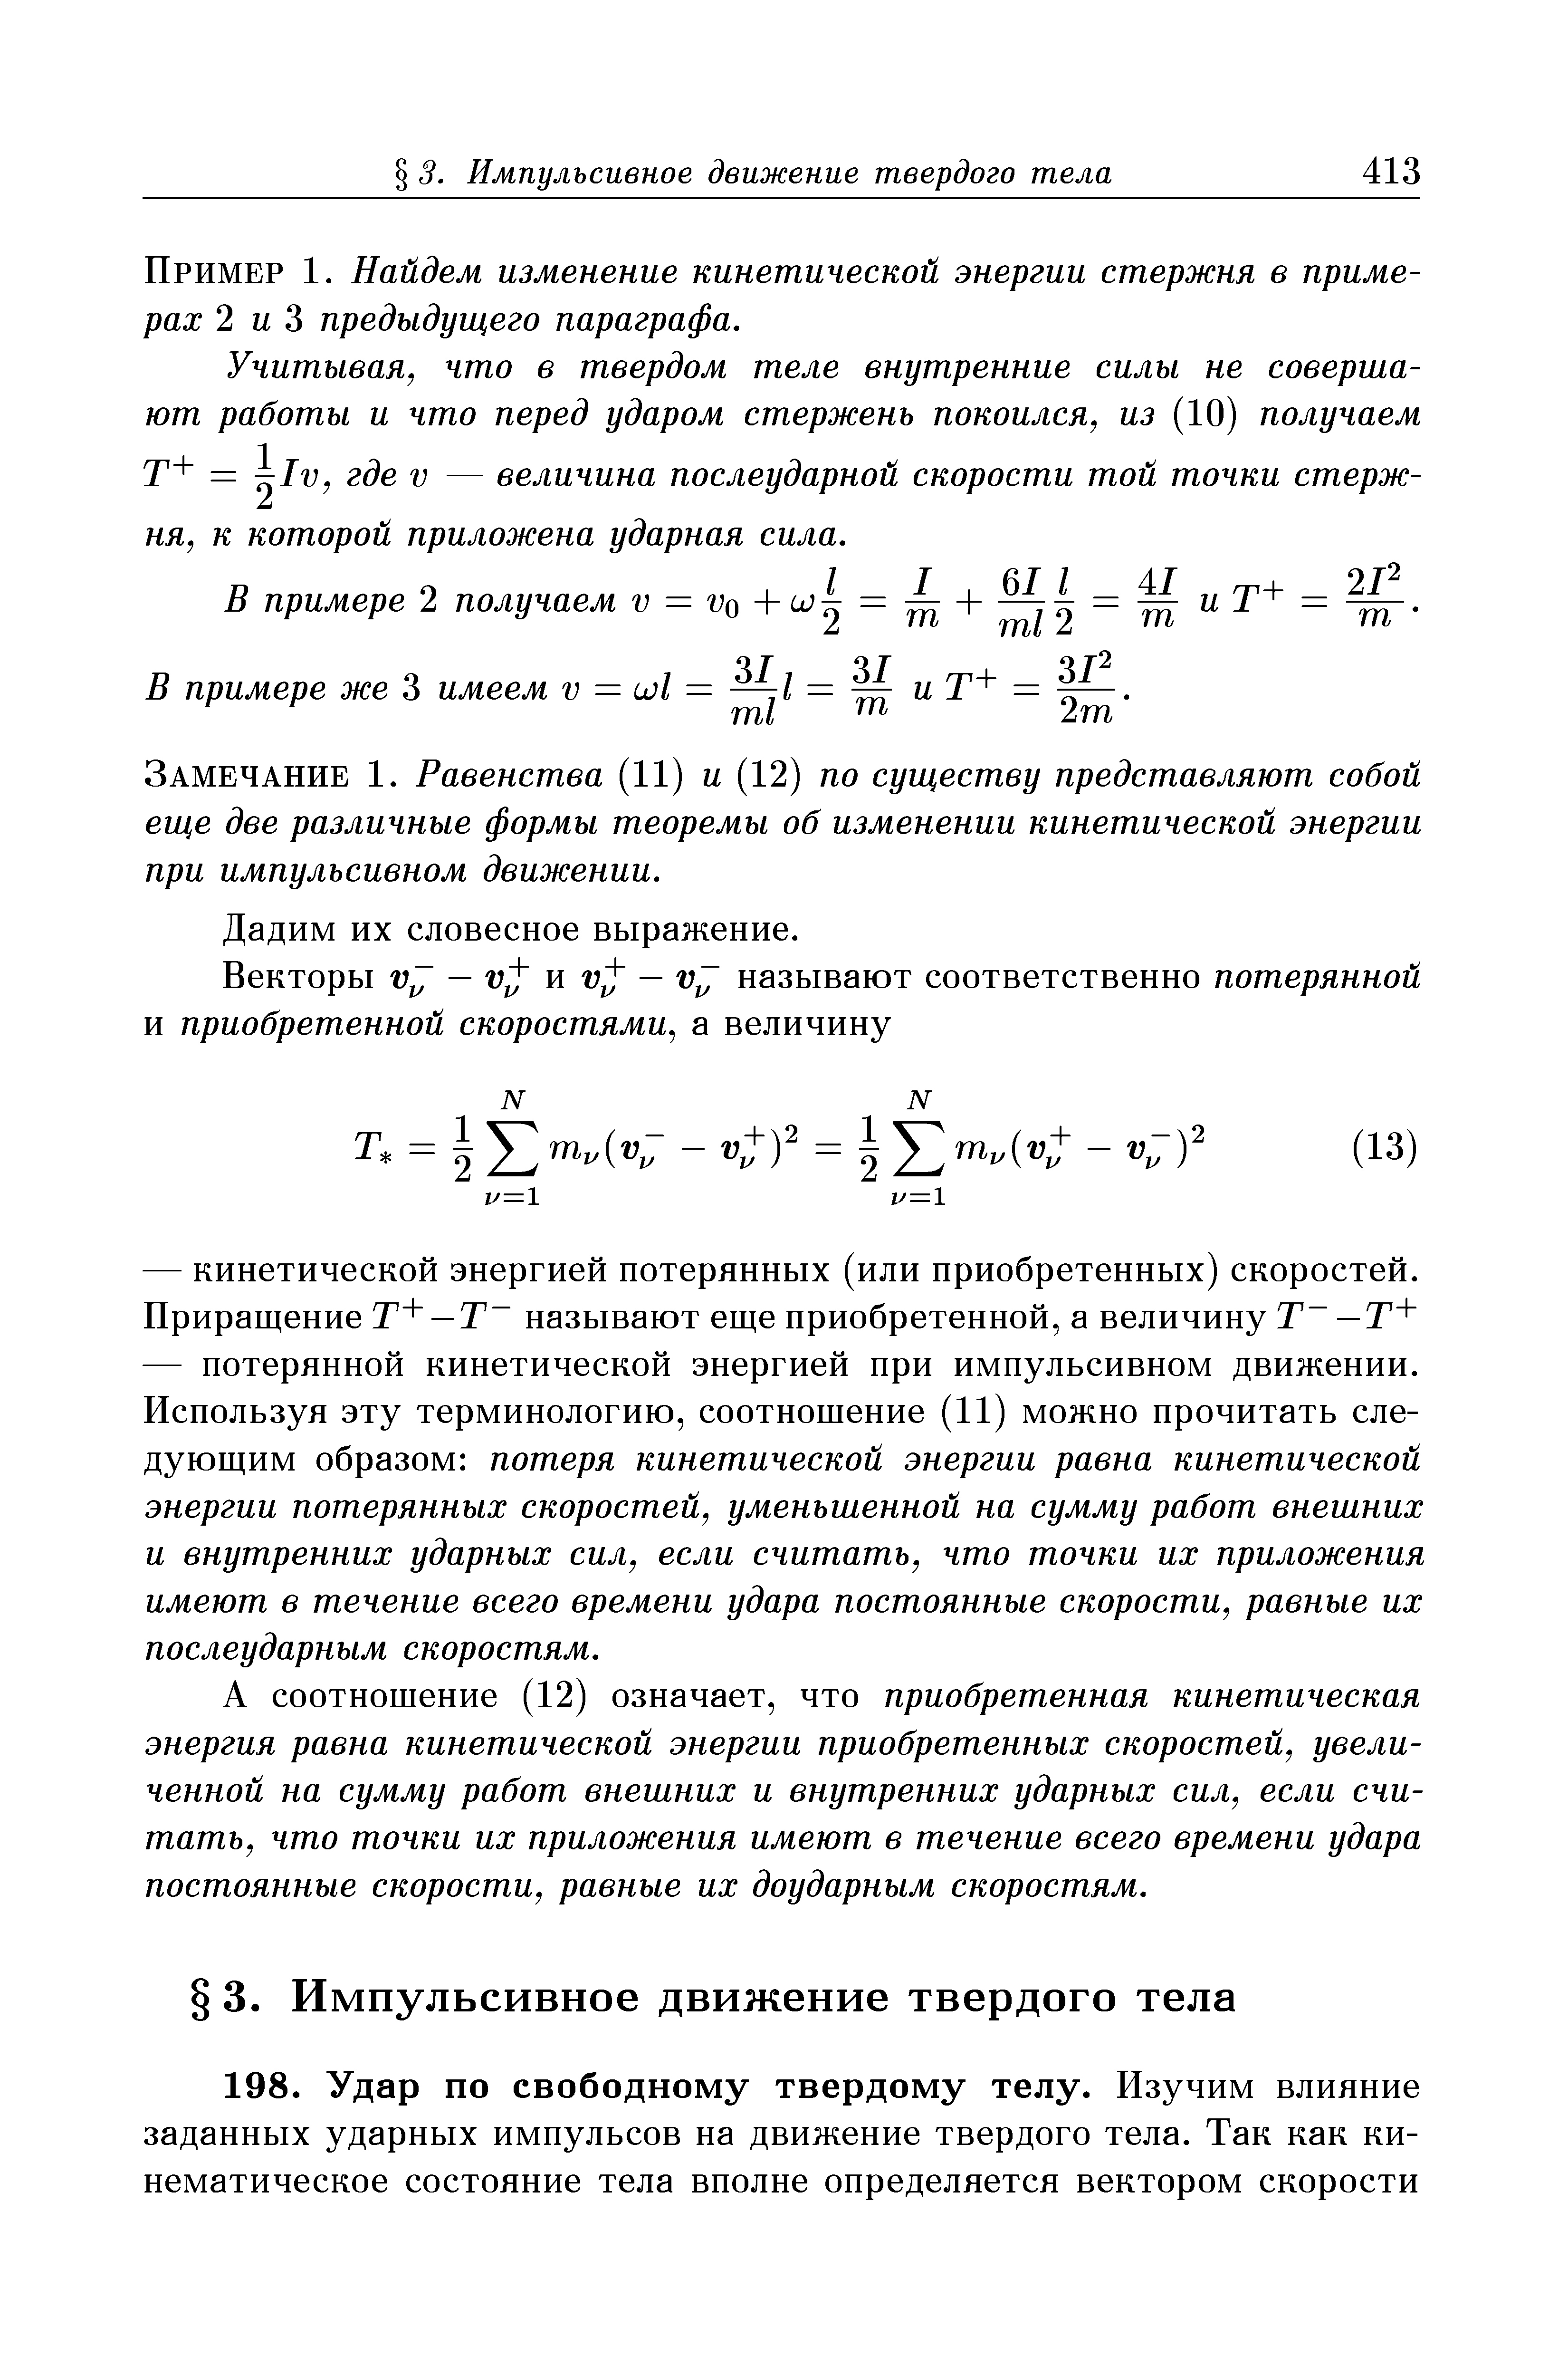 Пример 1. Найдем изменение кинетической энергии стержня в примерах 2 и 3 предыдущего параграфа.
